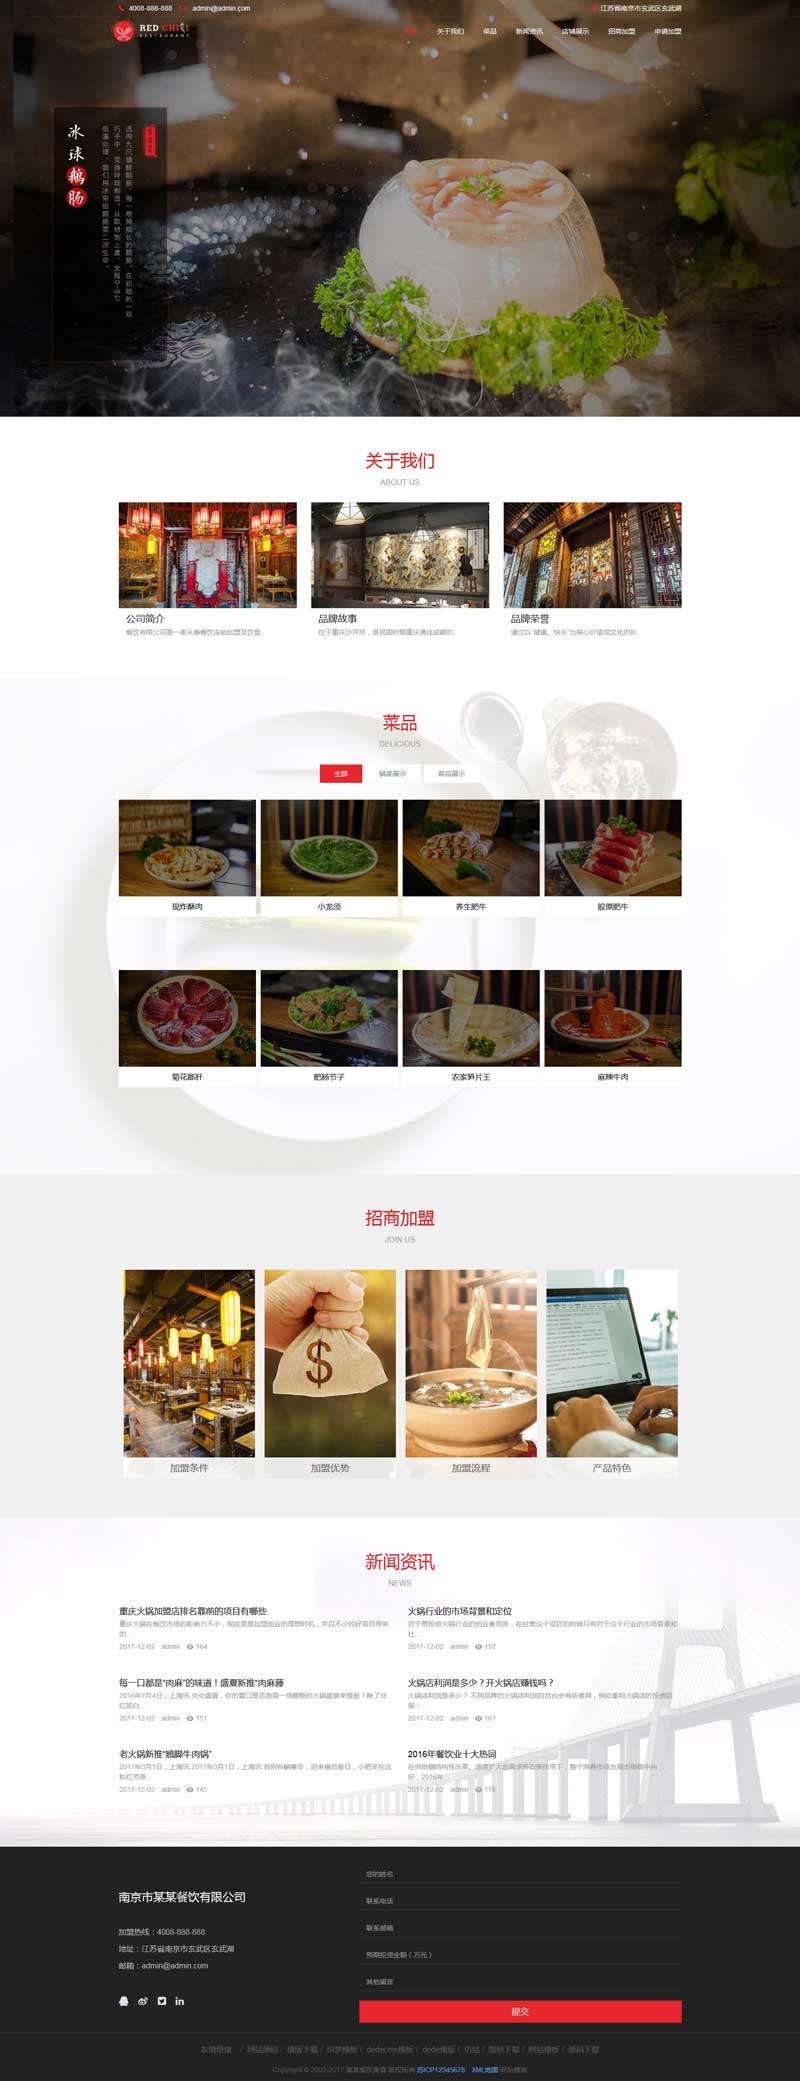 品牌餐饮美食加盟网站Wordpress模板(带手机版)截图